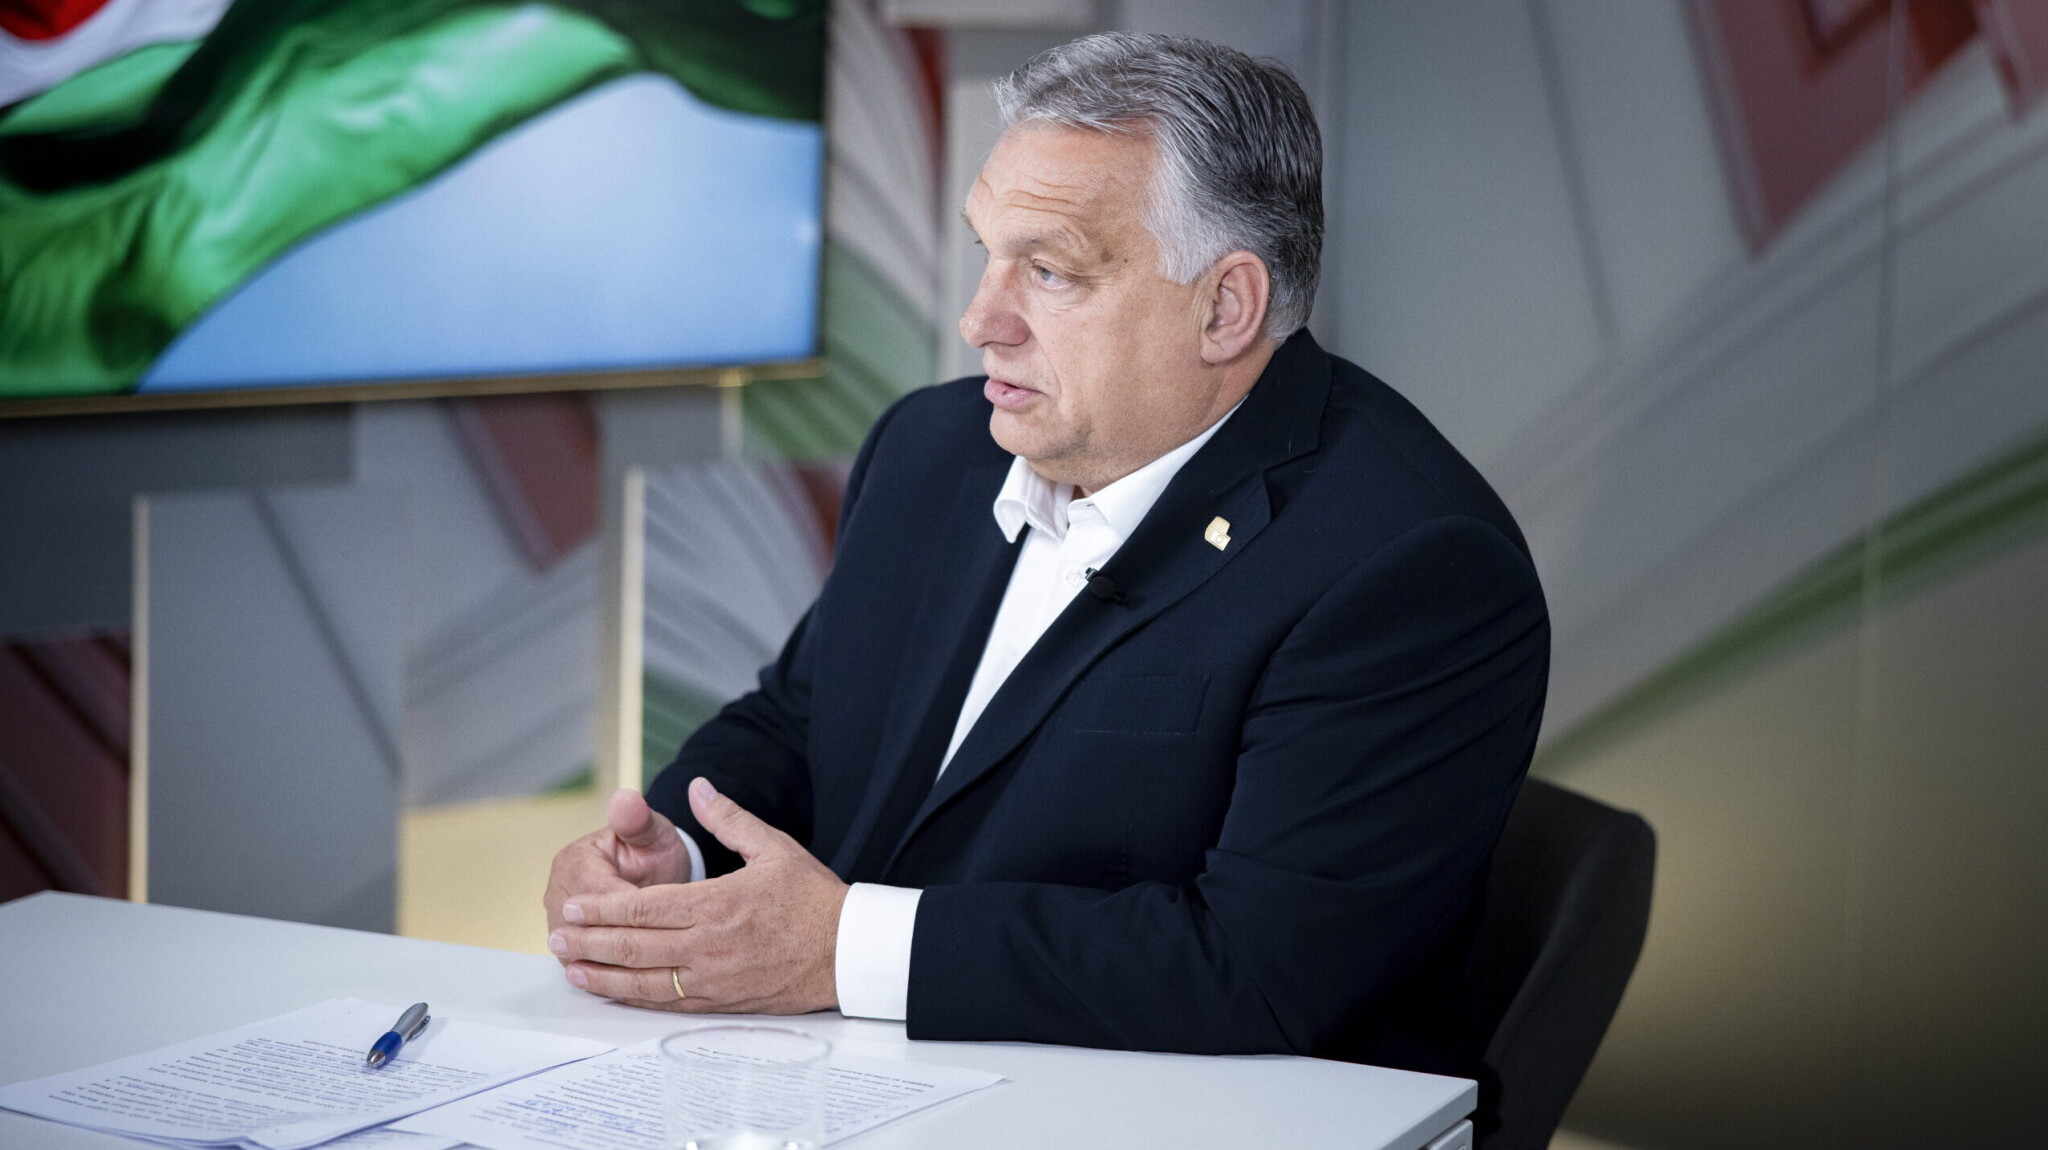 Testőre van Orbánnak, de vajon dublőre is?